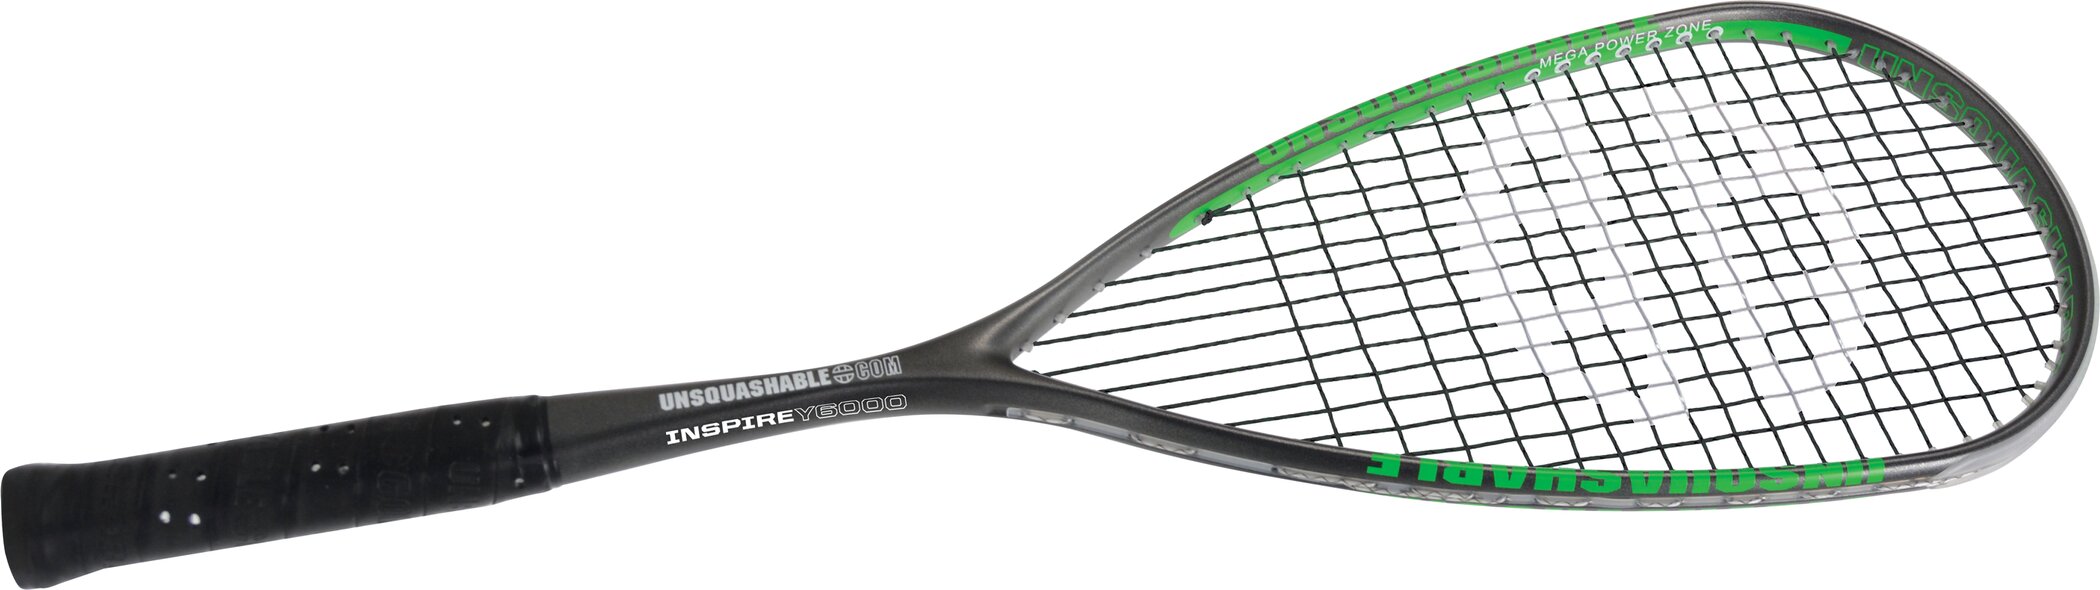 Squash-Schläger Y6000